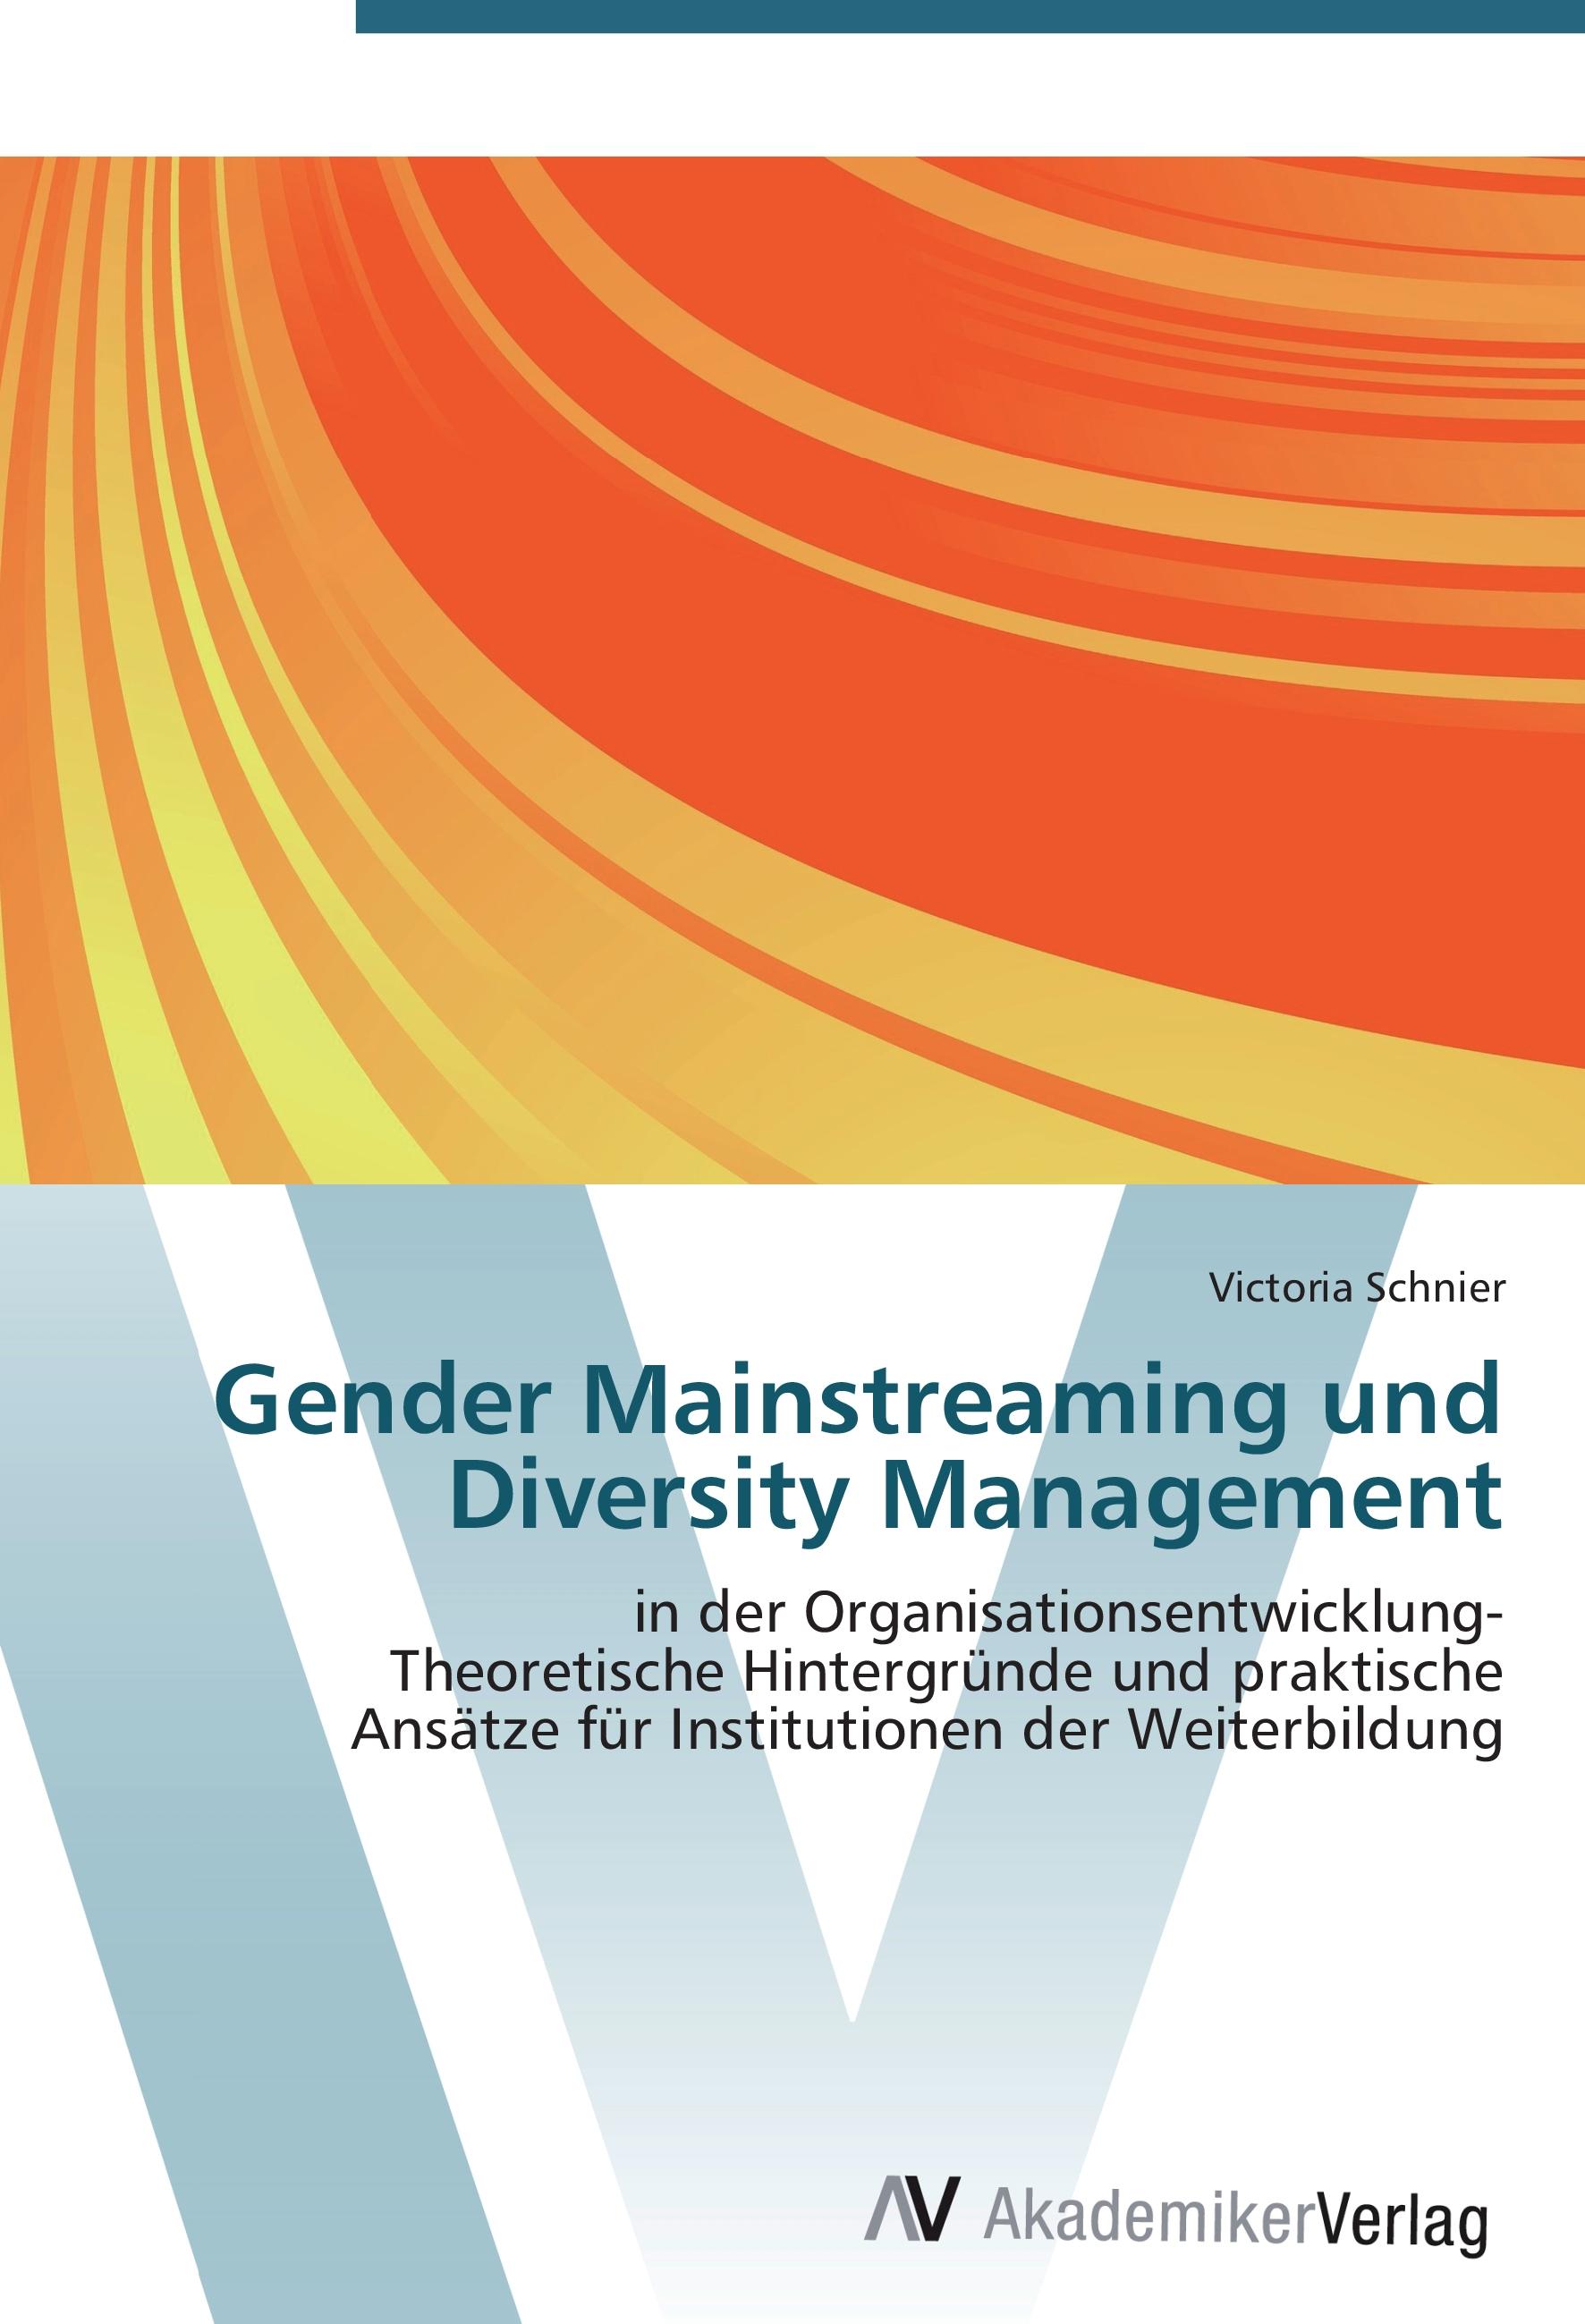 Gender Mainstreaming und Diversity Management - Victoria Schnier